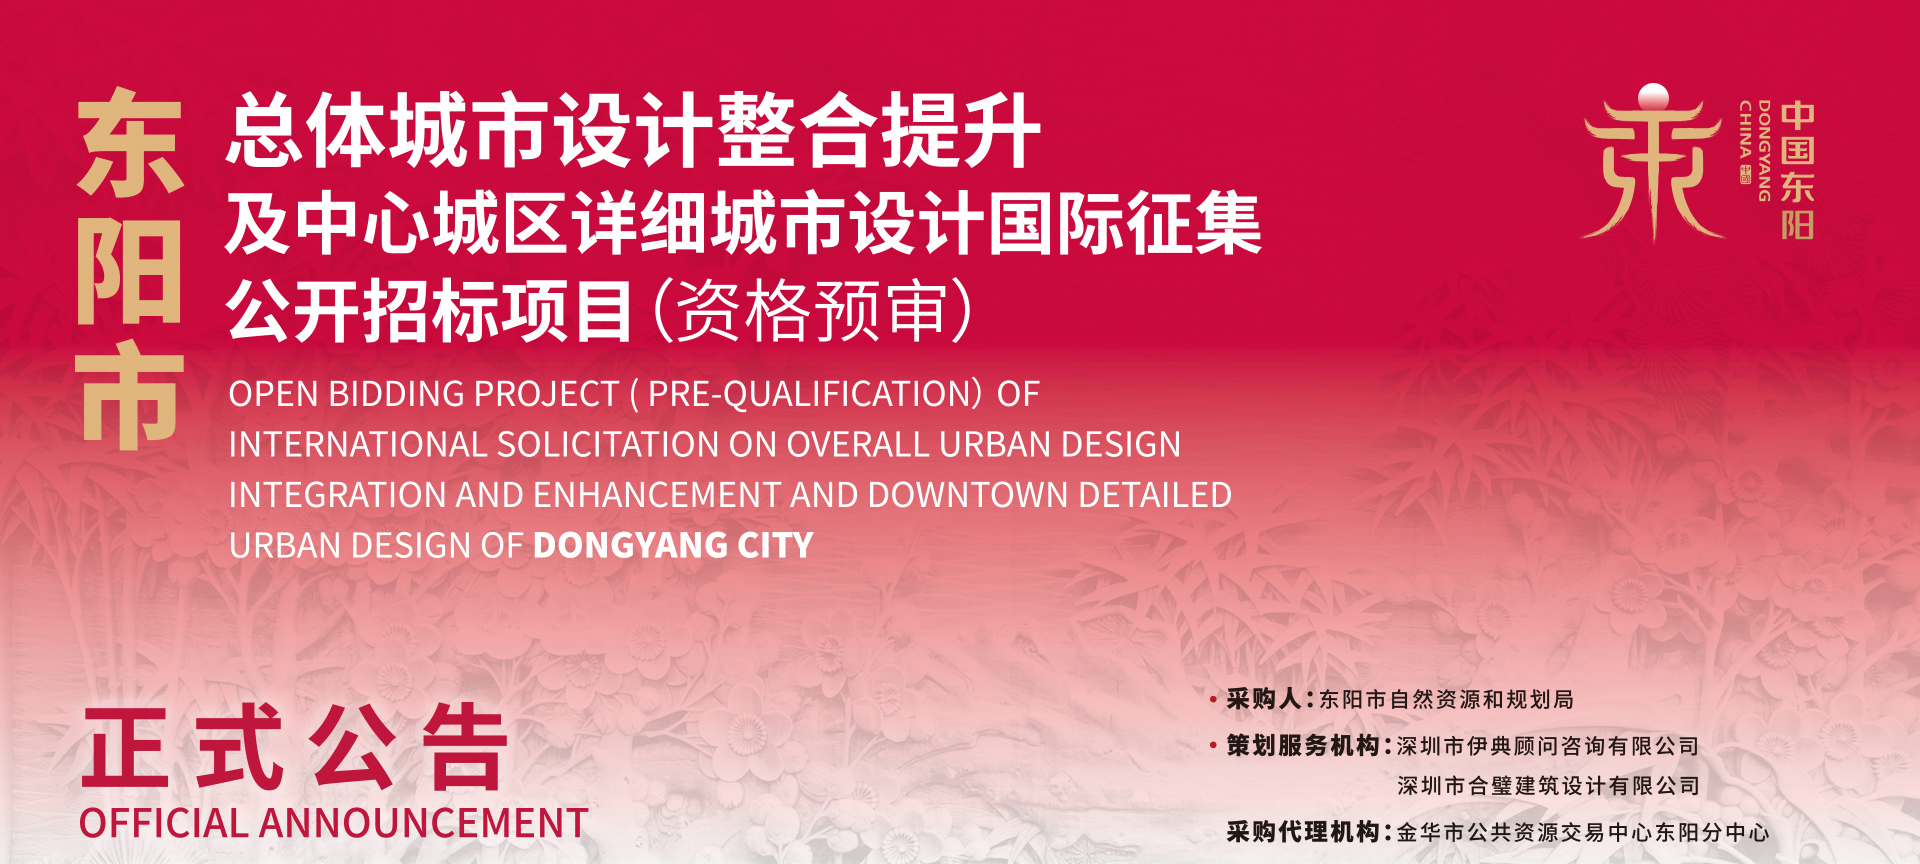 正式公告 | 东阳市总体城市设计整合提升及中心城区详细城市设计国际征集公开招标项目（资格预审）